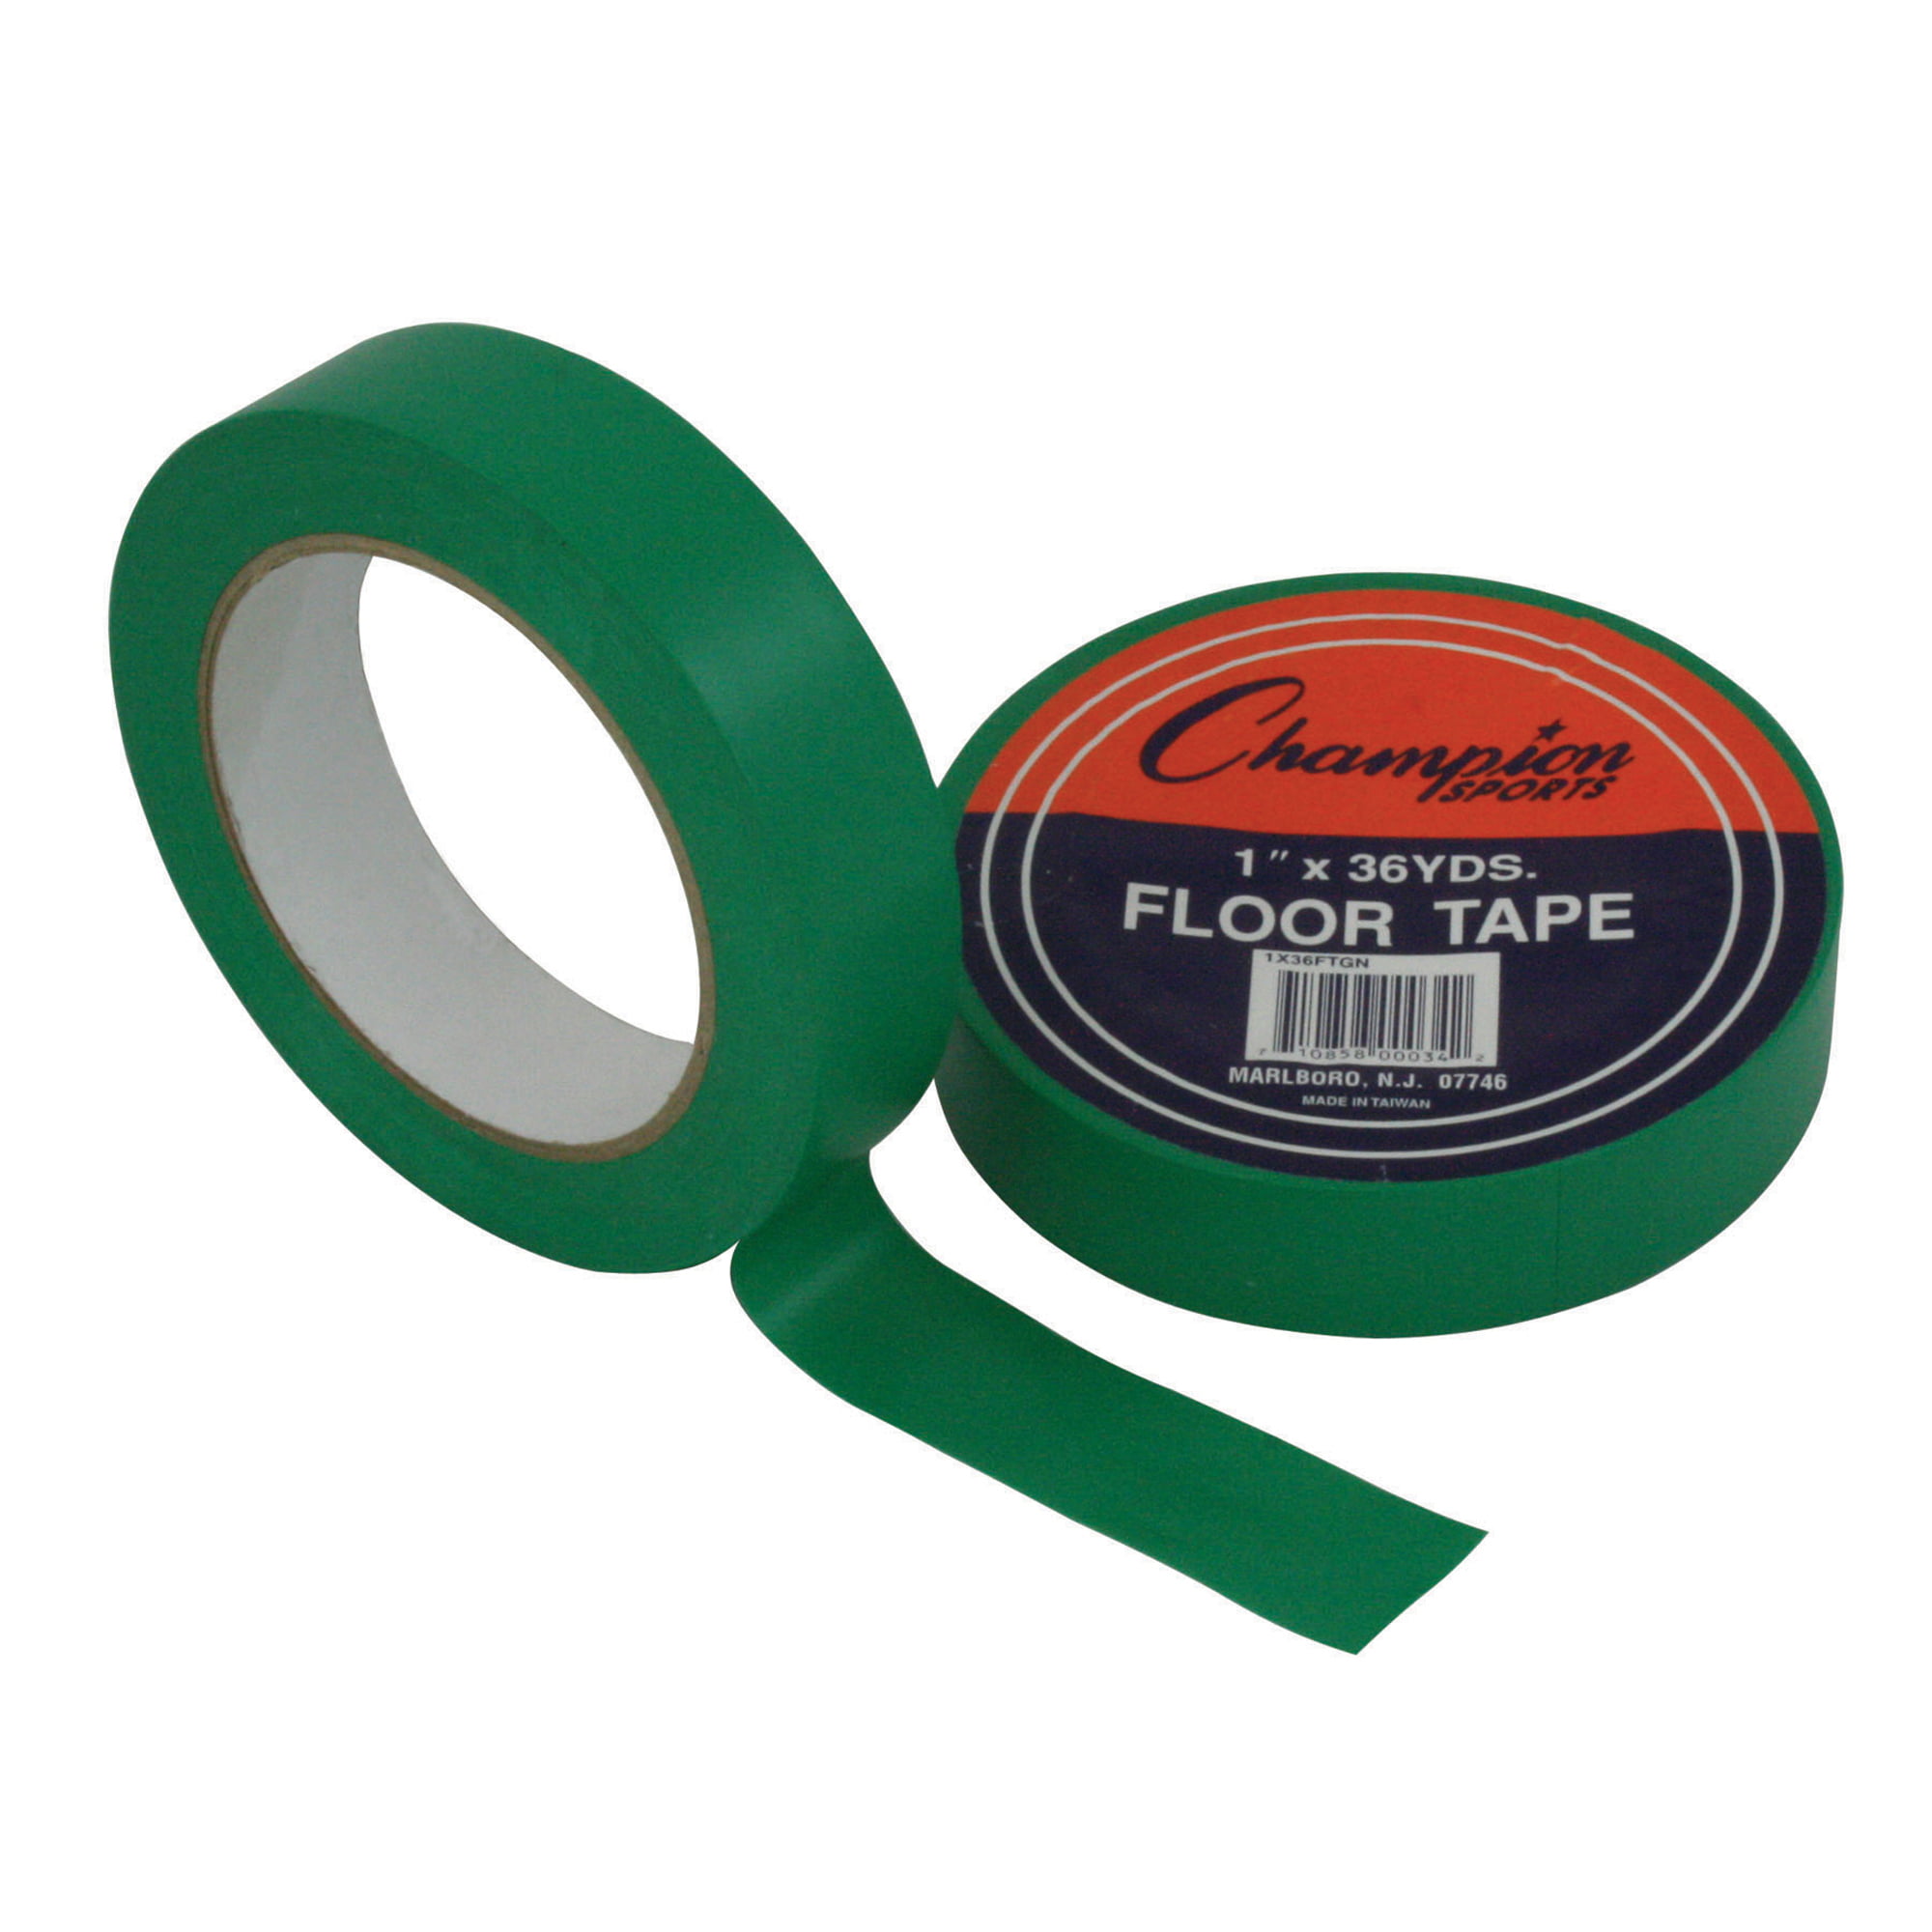 Green Vinyl Floor Marking Tape - Get 10% Off Now